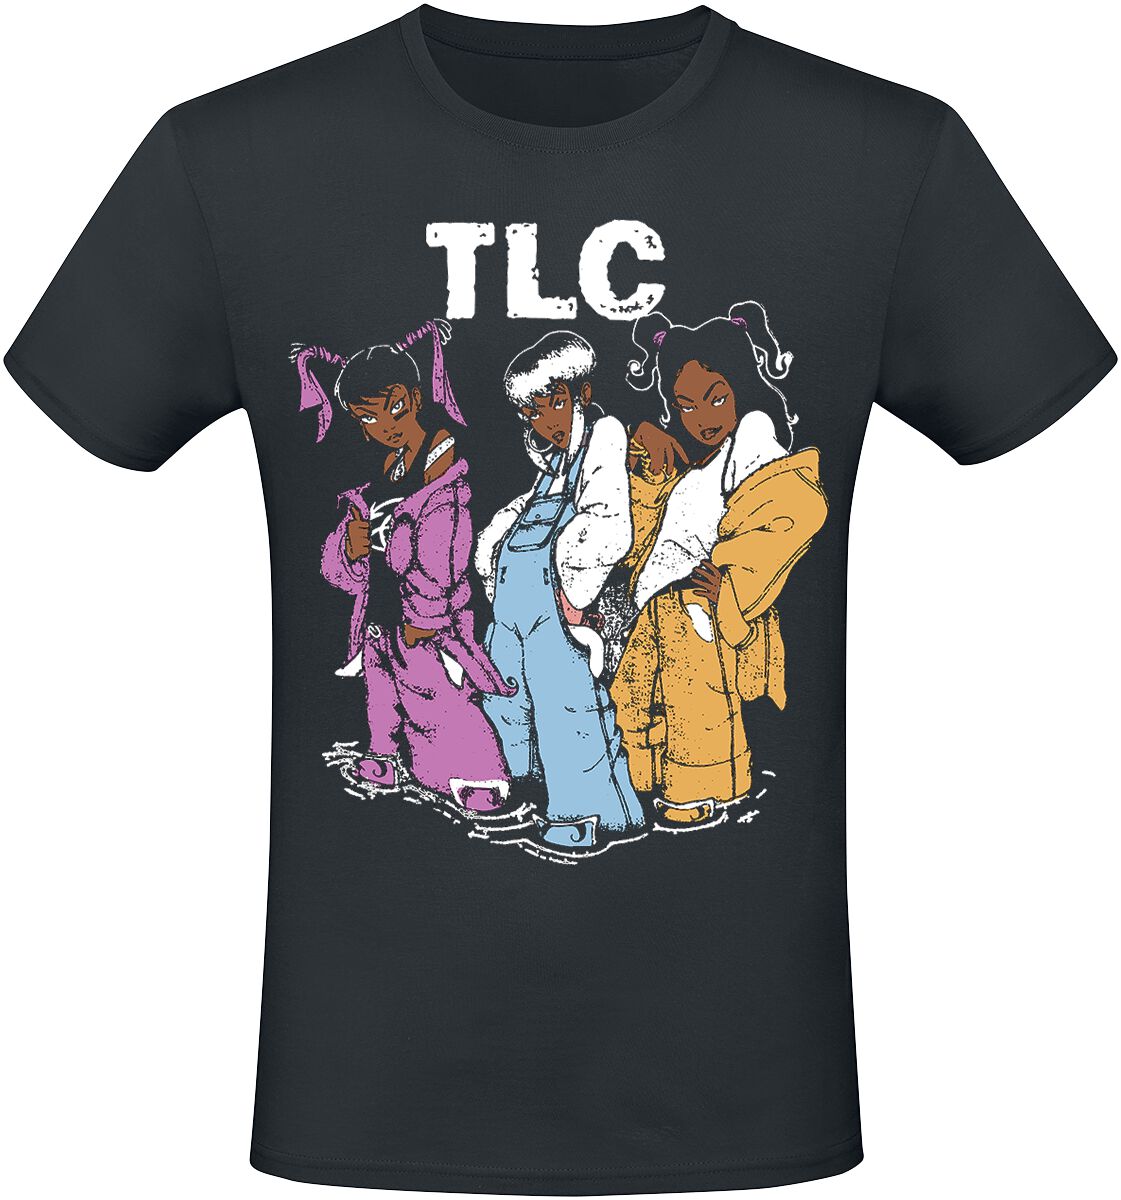 TLC T-Shirt - Cartoons - S bis 3XL - für Männer - Größe XL - schwarz  - Lizenziertes Merchandise!